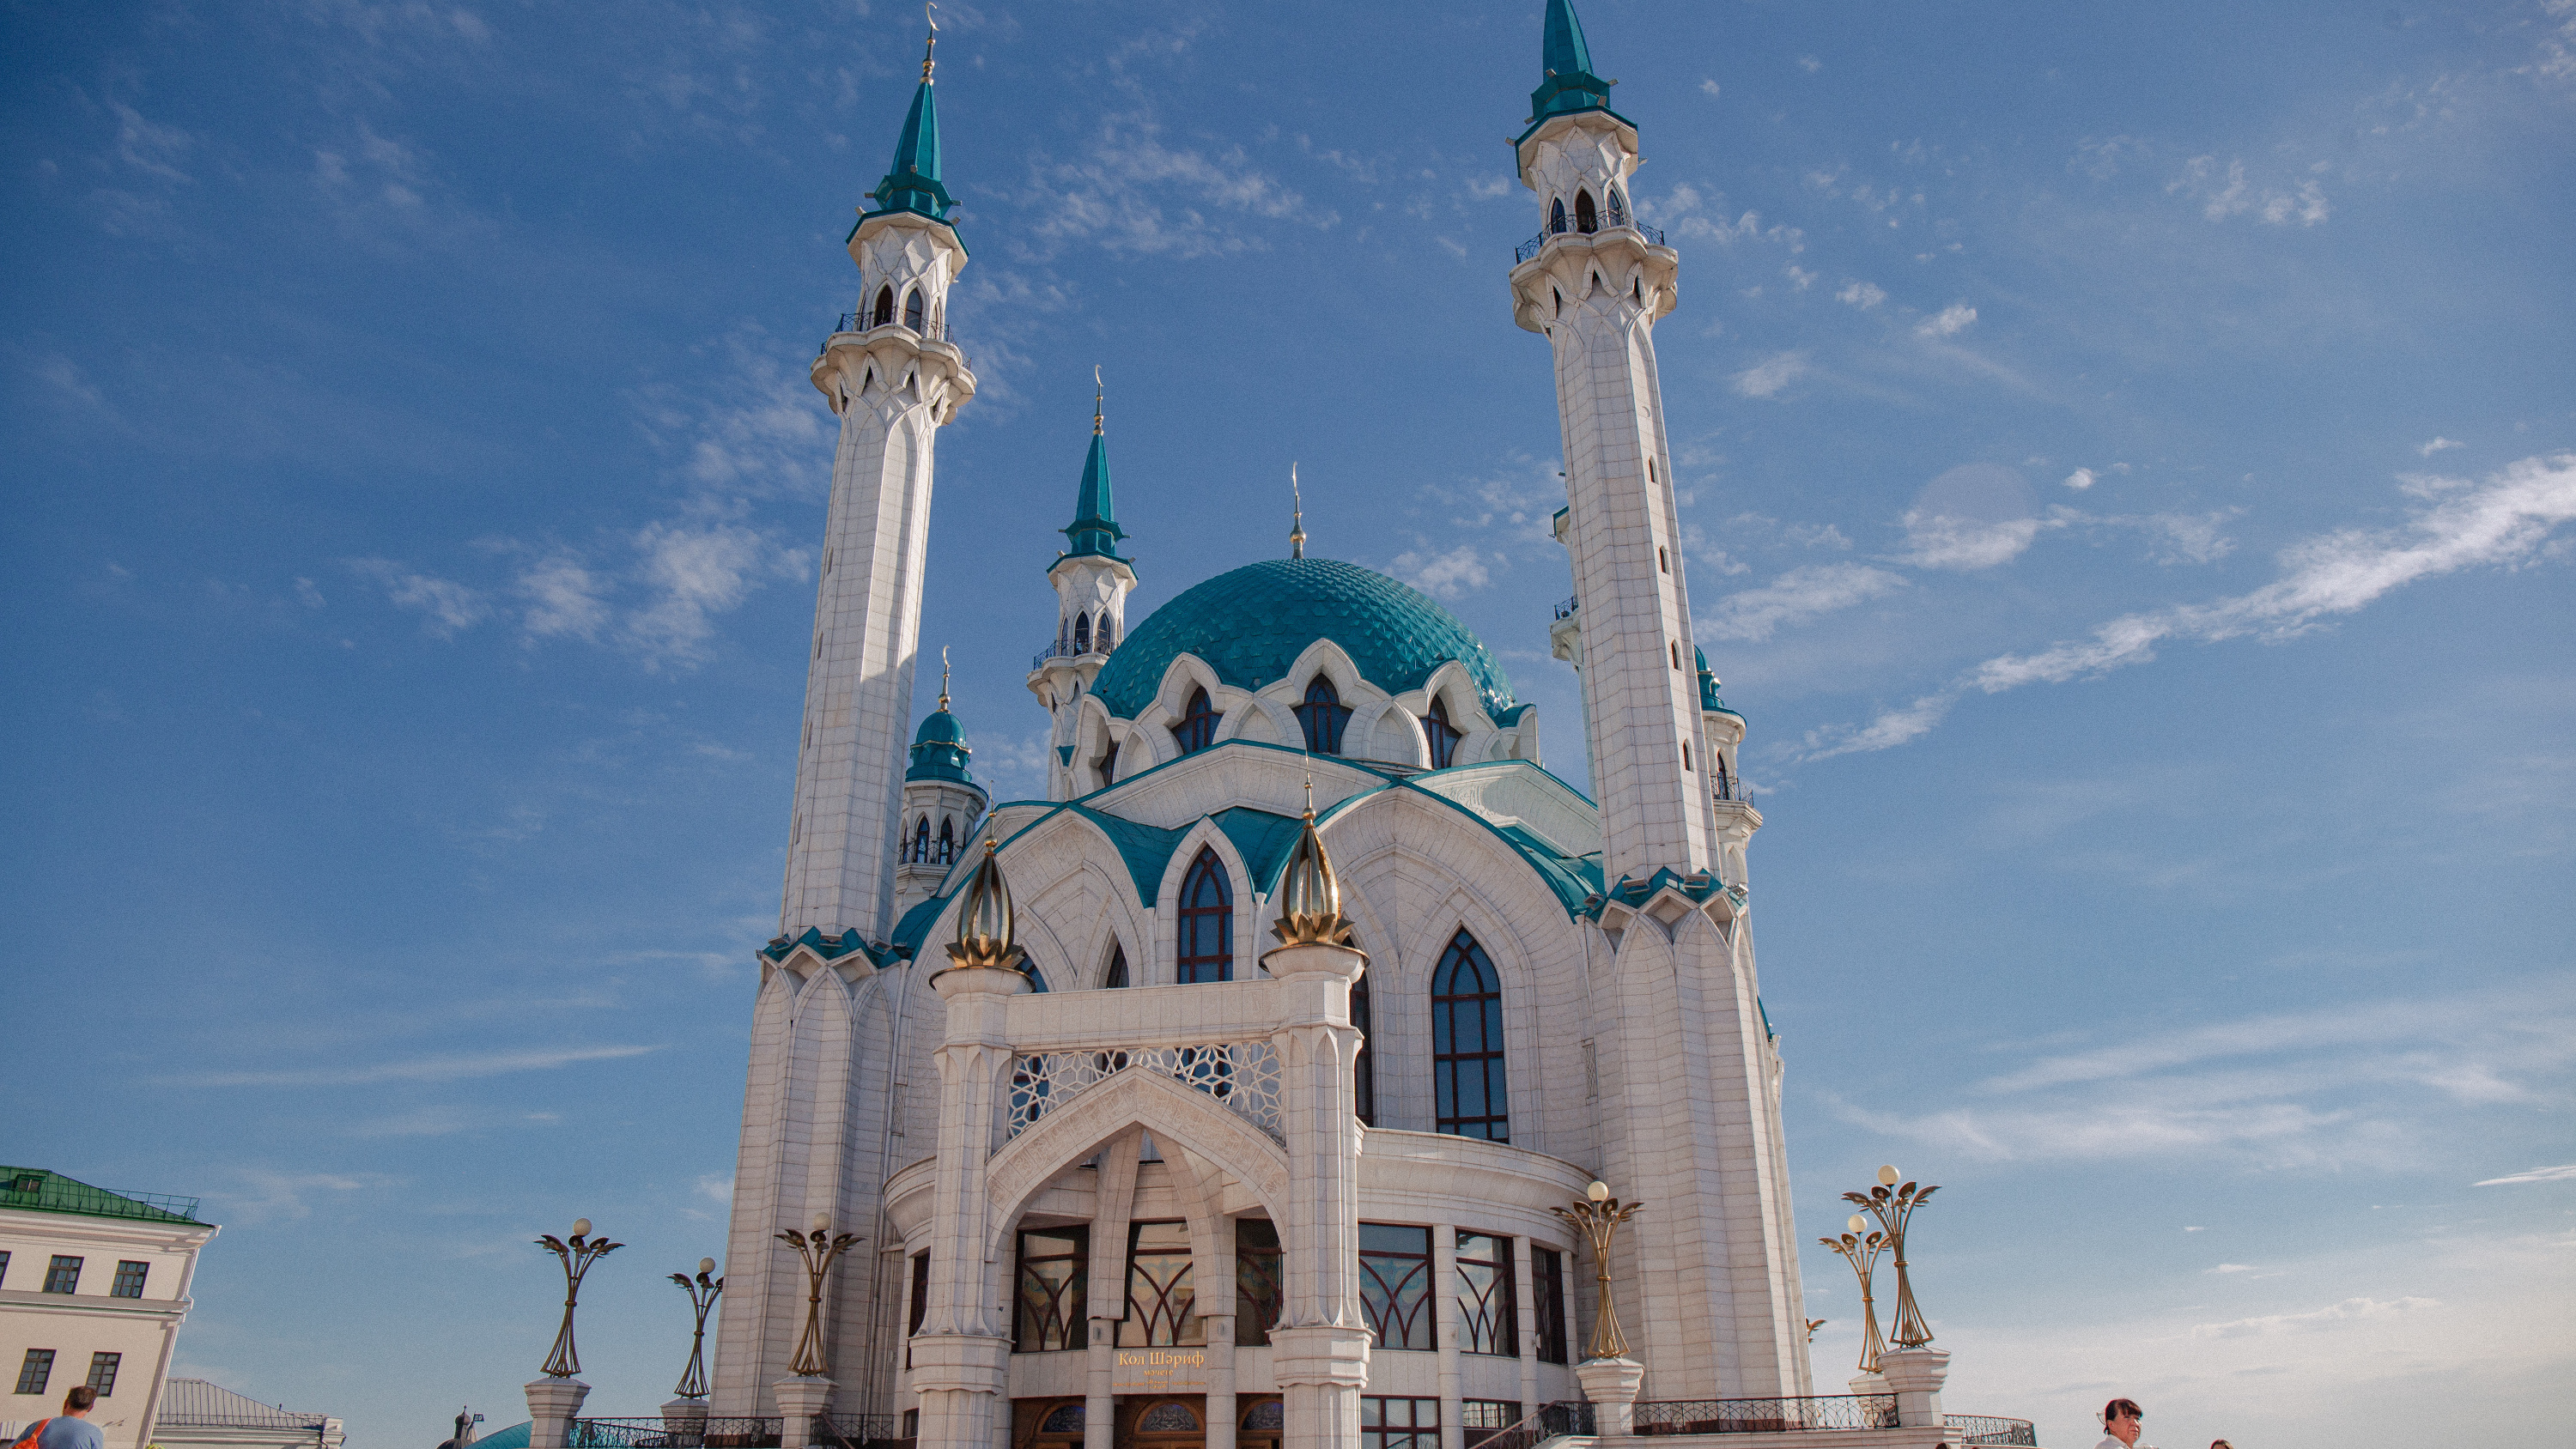 «Что такое 100 рублей? Это не так много»: в Татарстане могут ввести туристический налог — разбираемся с экспертами, что это